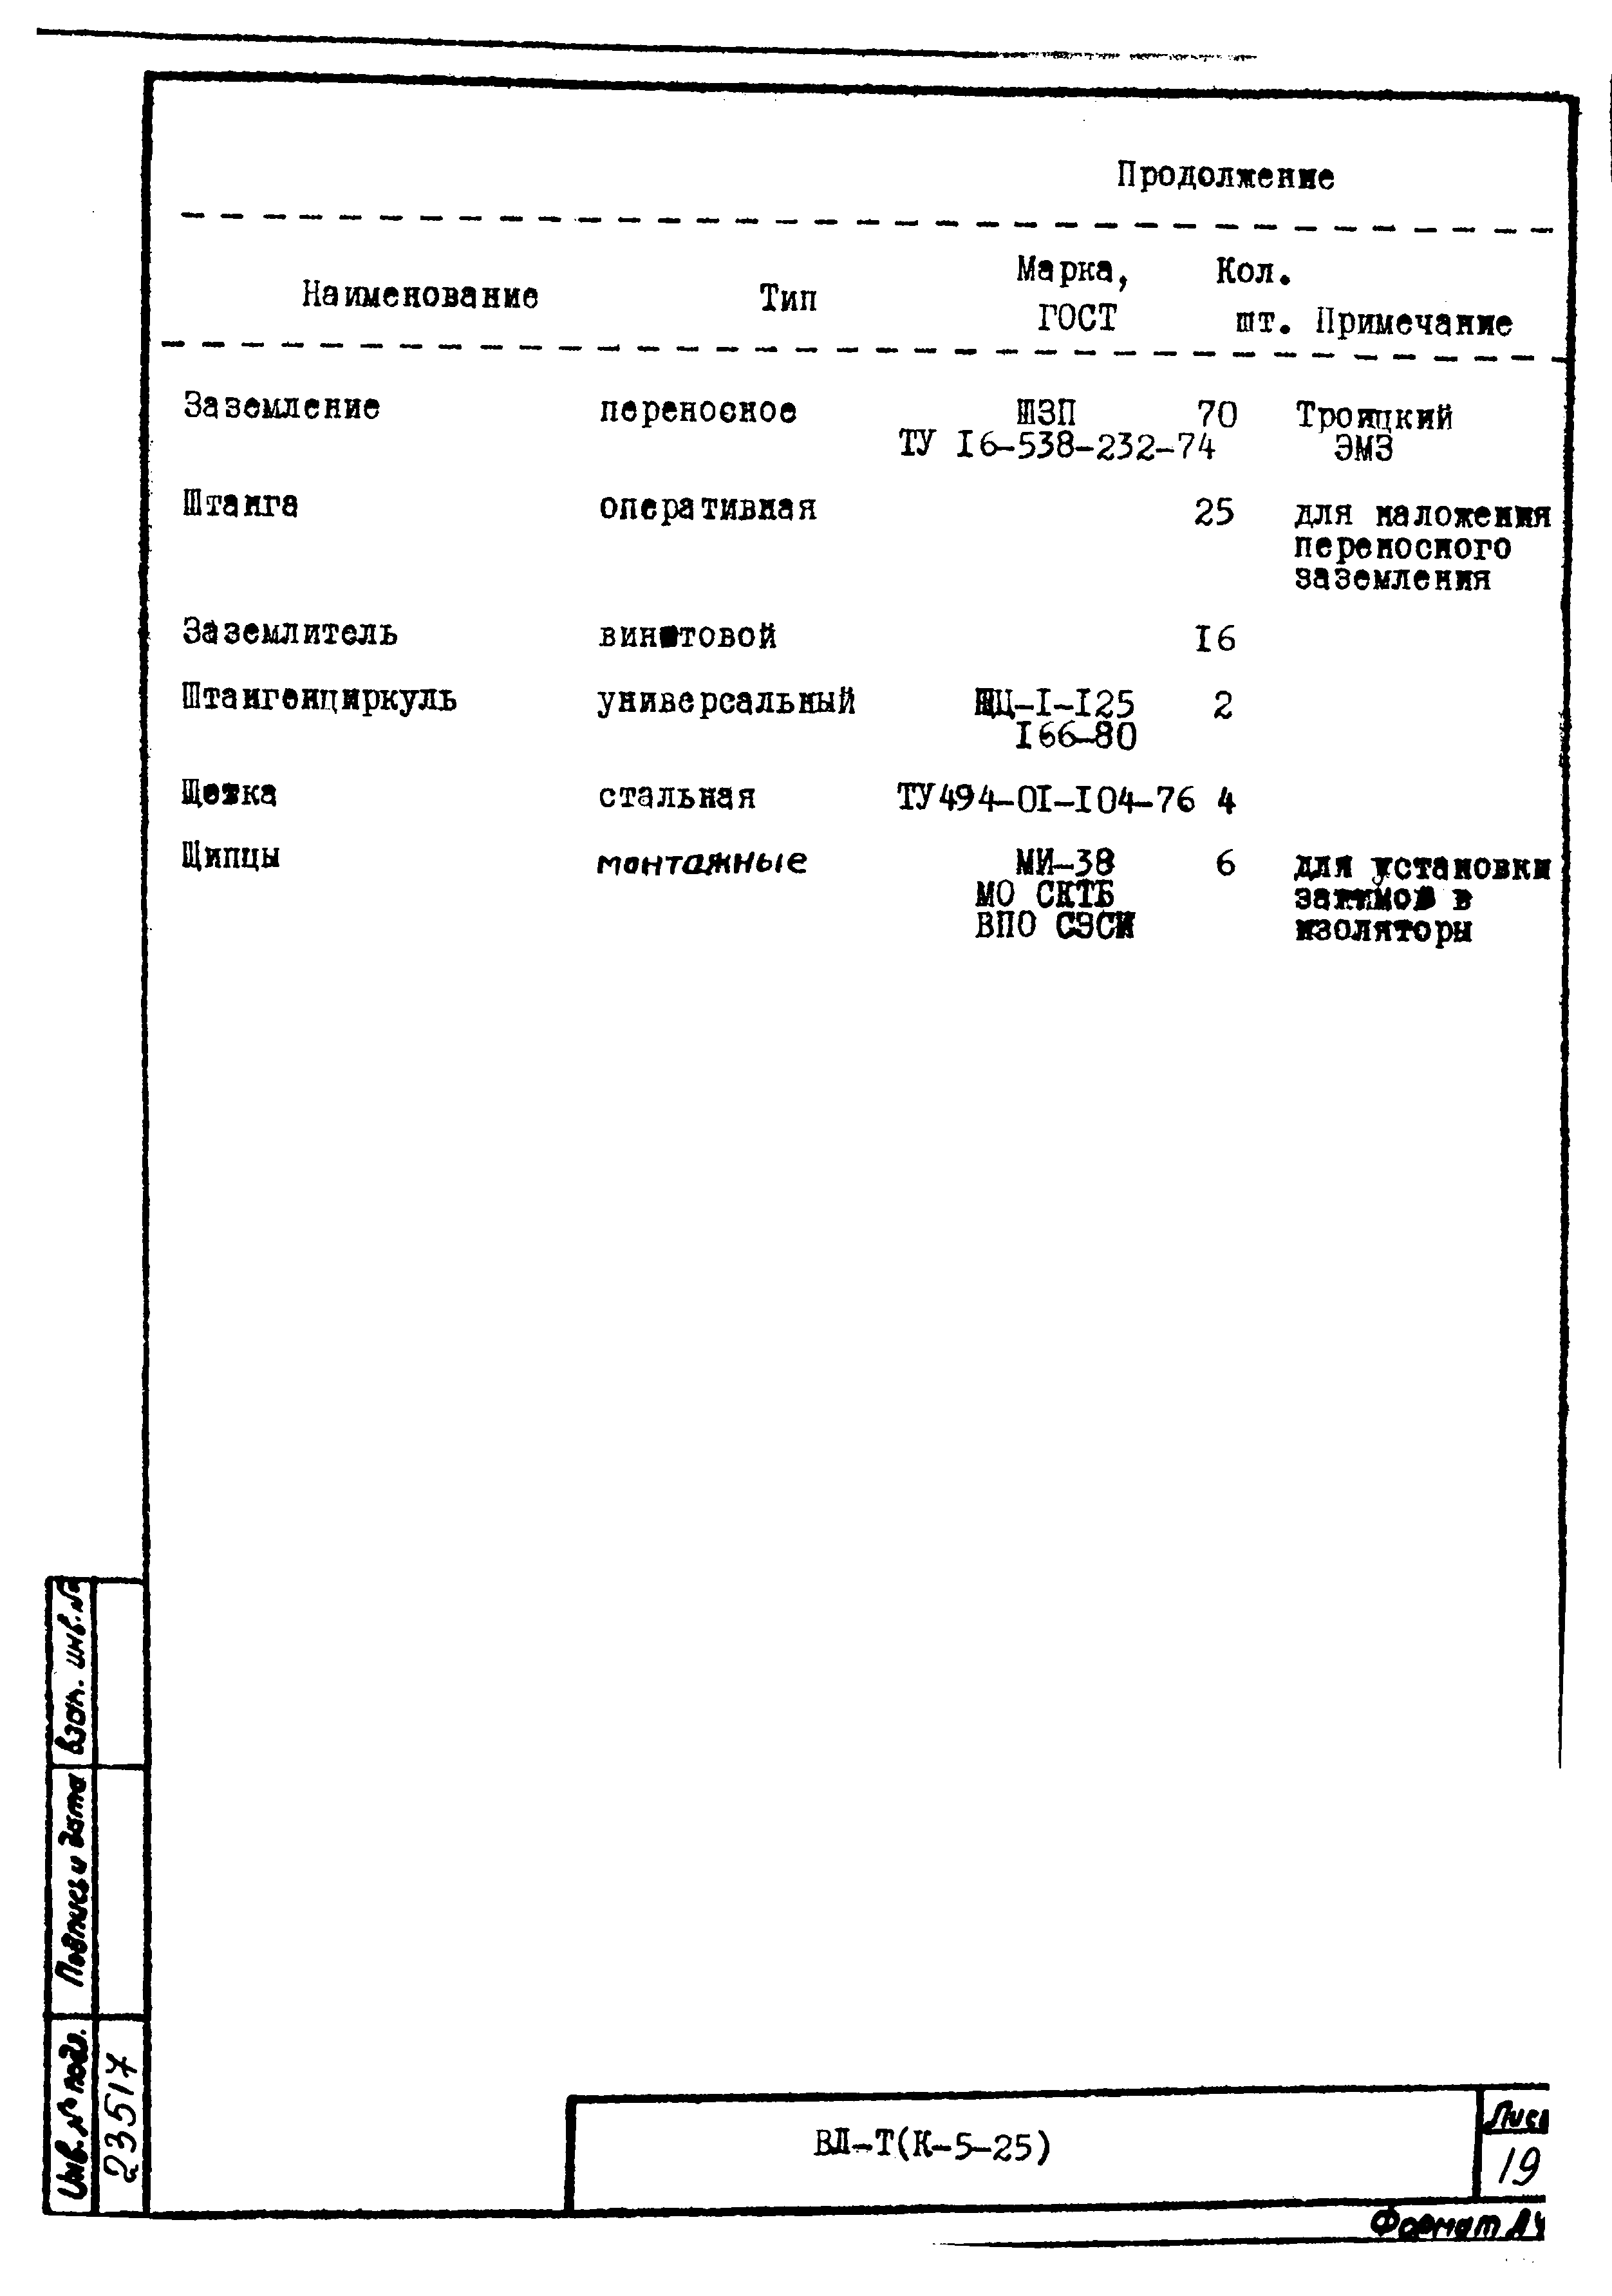 Технологическая карта К-5-25-31